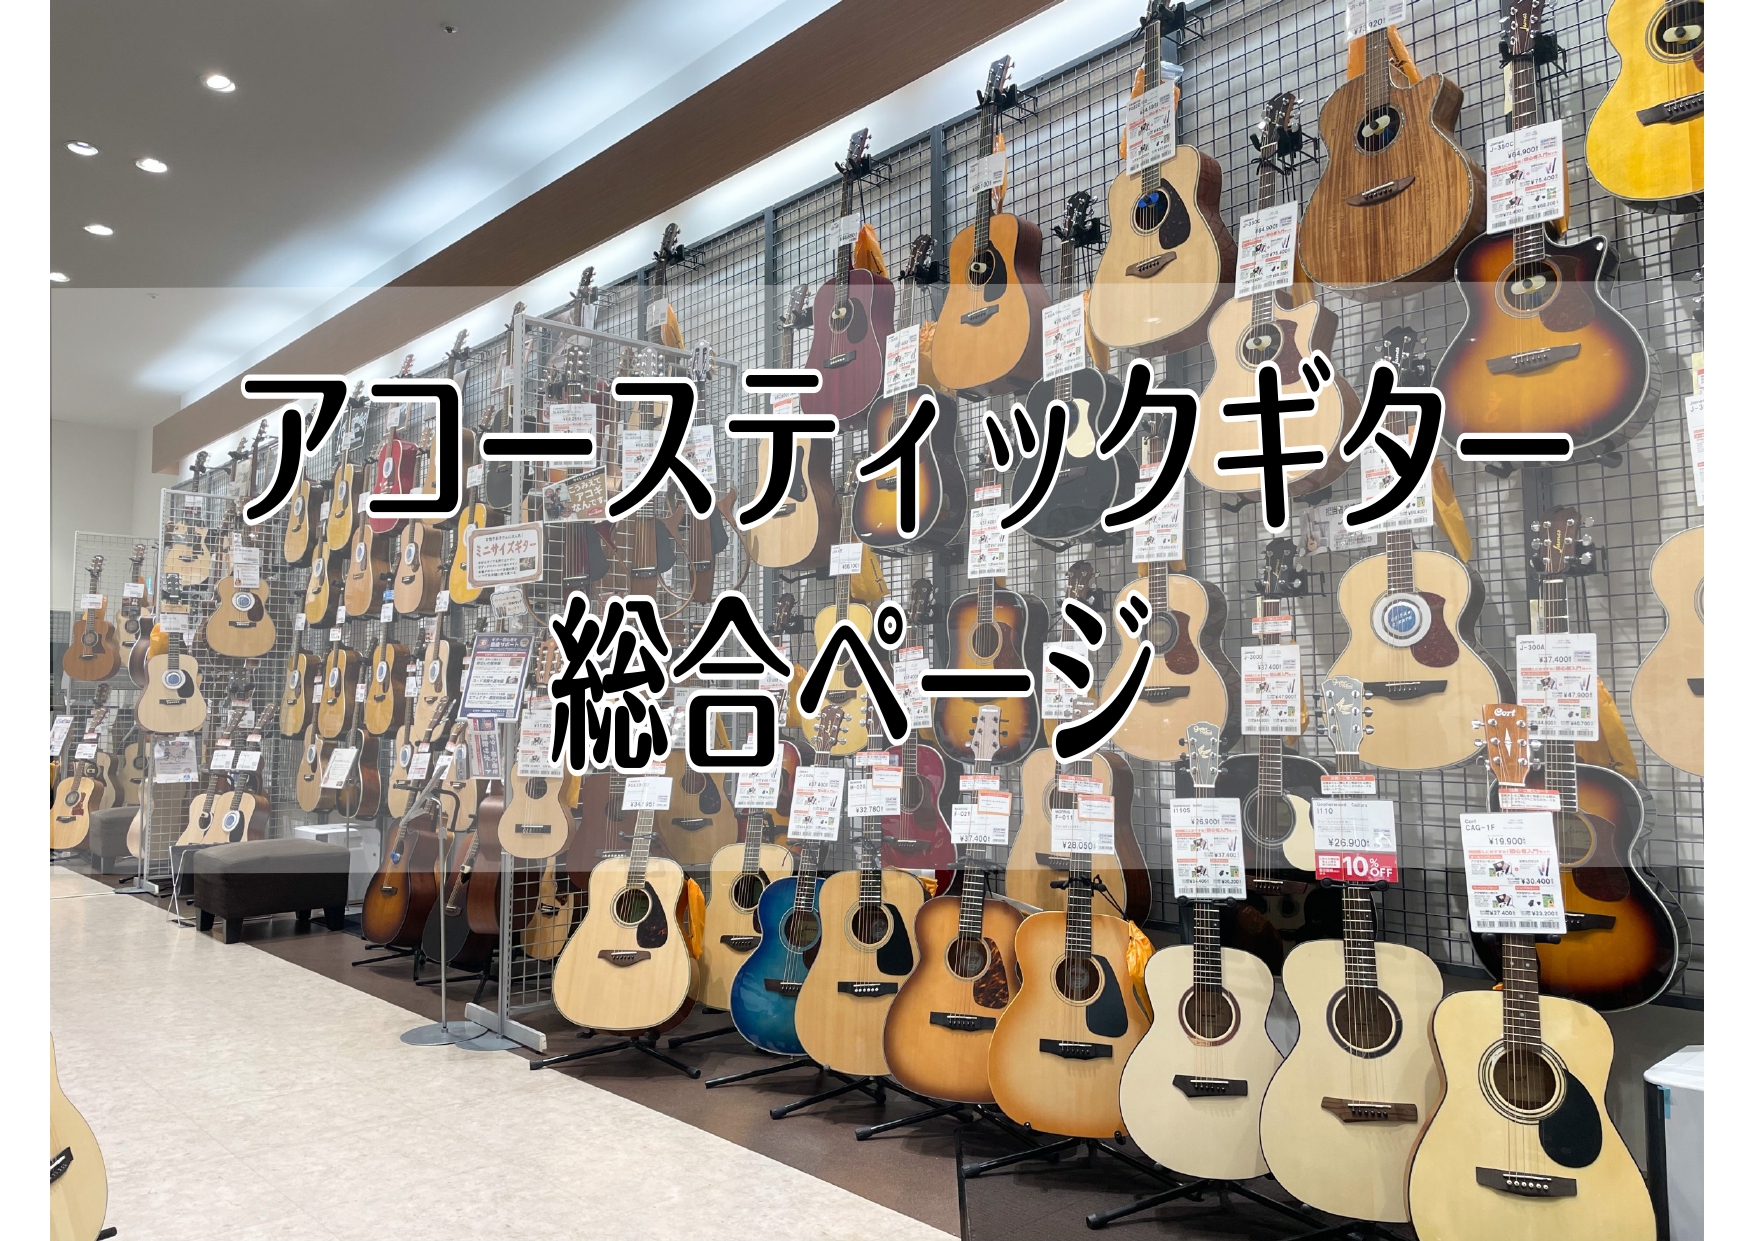 アコギを選ぶなら展示台数多数のイオンレイクタウン店へ 島村楽器イオンレイクタウン店では、エレキギターを多数展示しております。 関東地方でエレキギターをお探しの方、幅広い品揃えを一台一台弾き比べていただけます。 レイクタウン近隣のお客様はもちろん、埼玉県吉川市・さいたま市・八潮市・北葛飾郡松伏町、さら […]